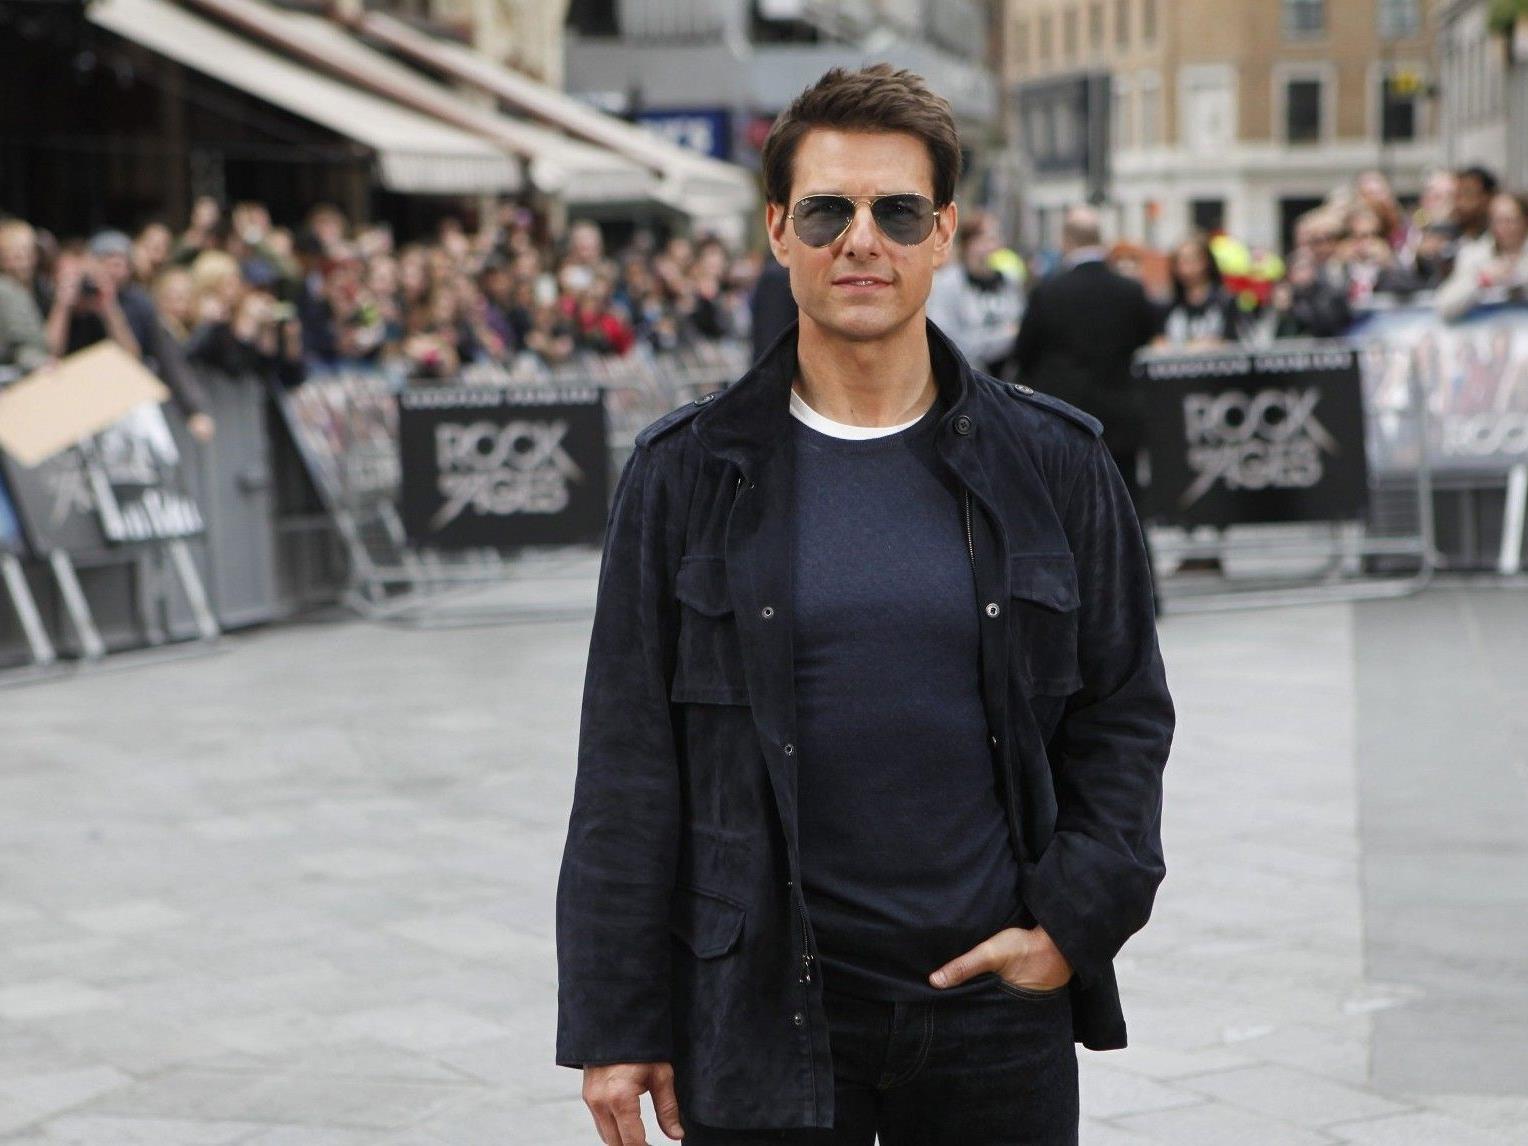 Gerüchten zu Folge soll Tom Cruise ein "Braut-Casting" veranstaltet haben.